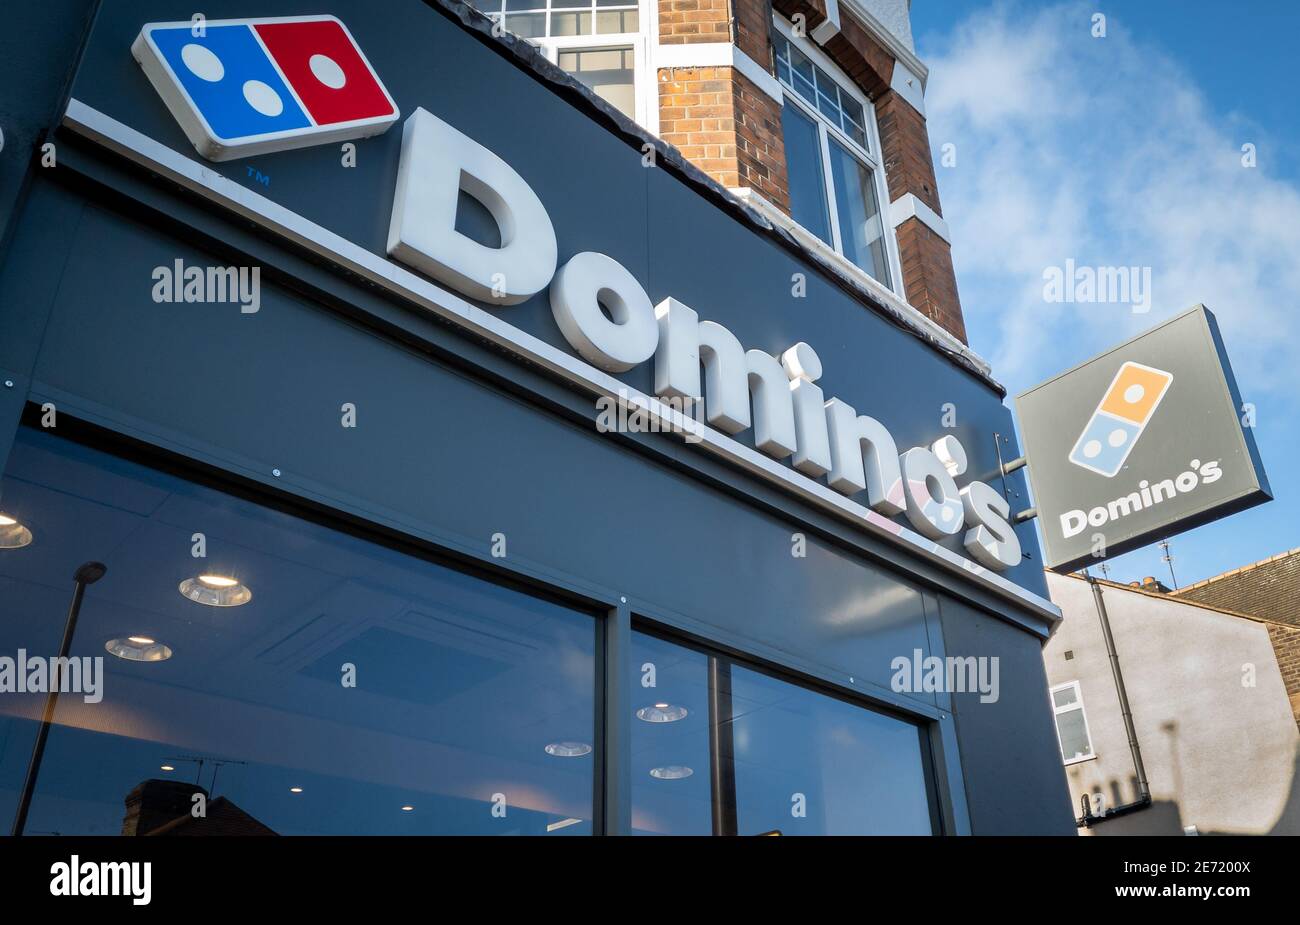 Le nom et le logo de Domino's. Compagnie multinationale américaine de pizza fast food. Banque D'Images